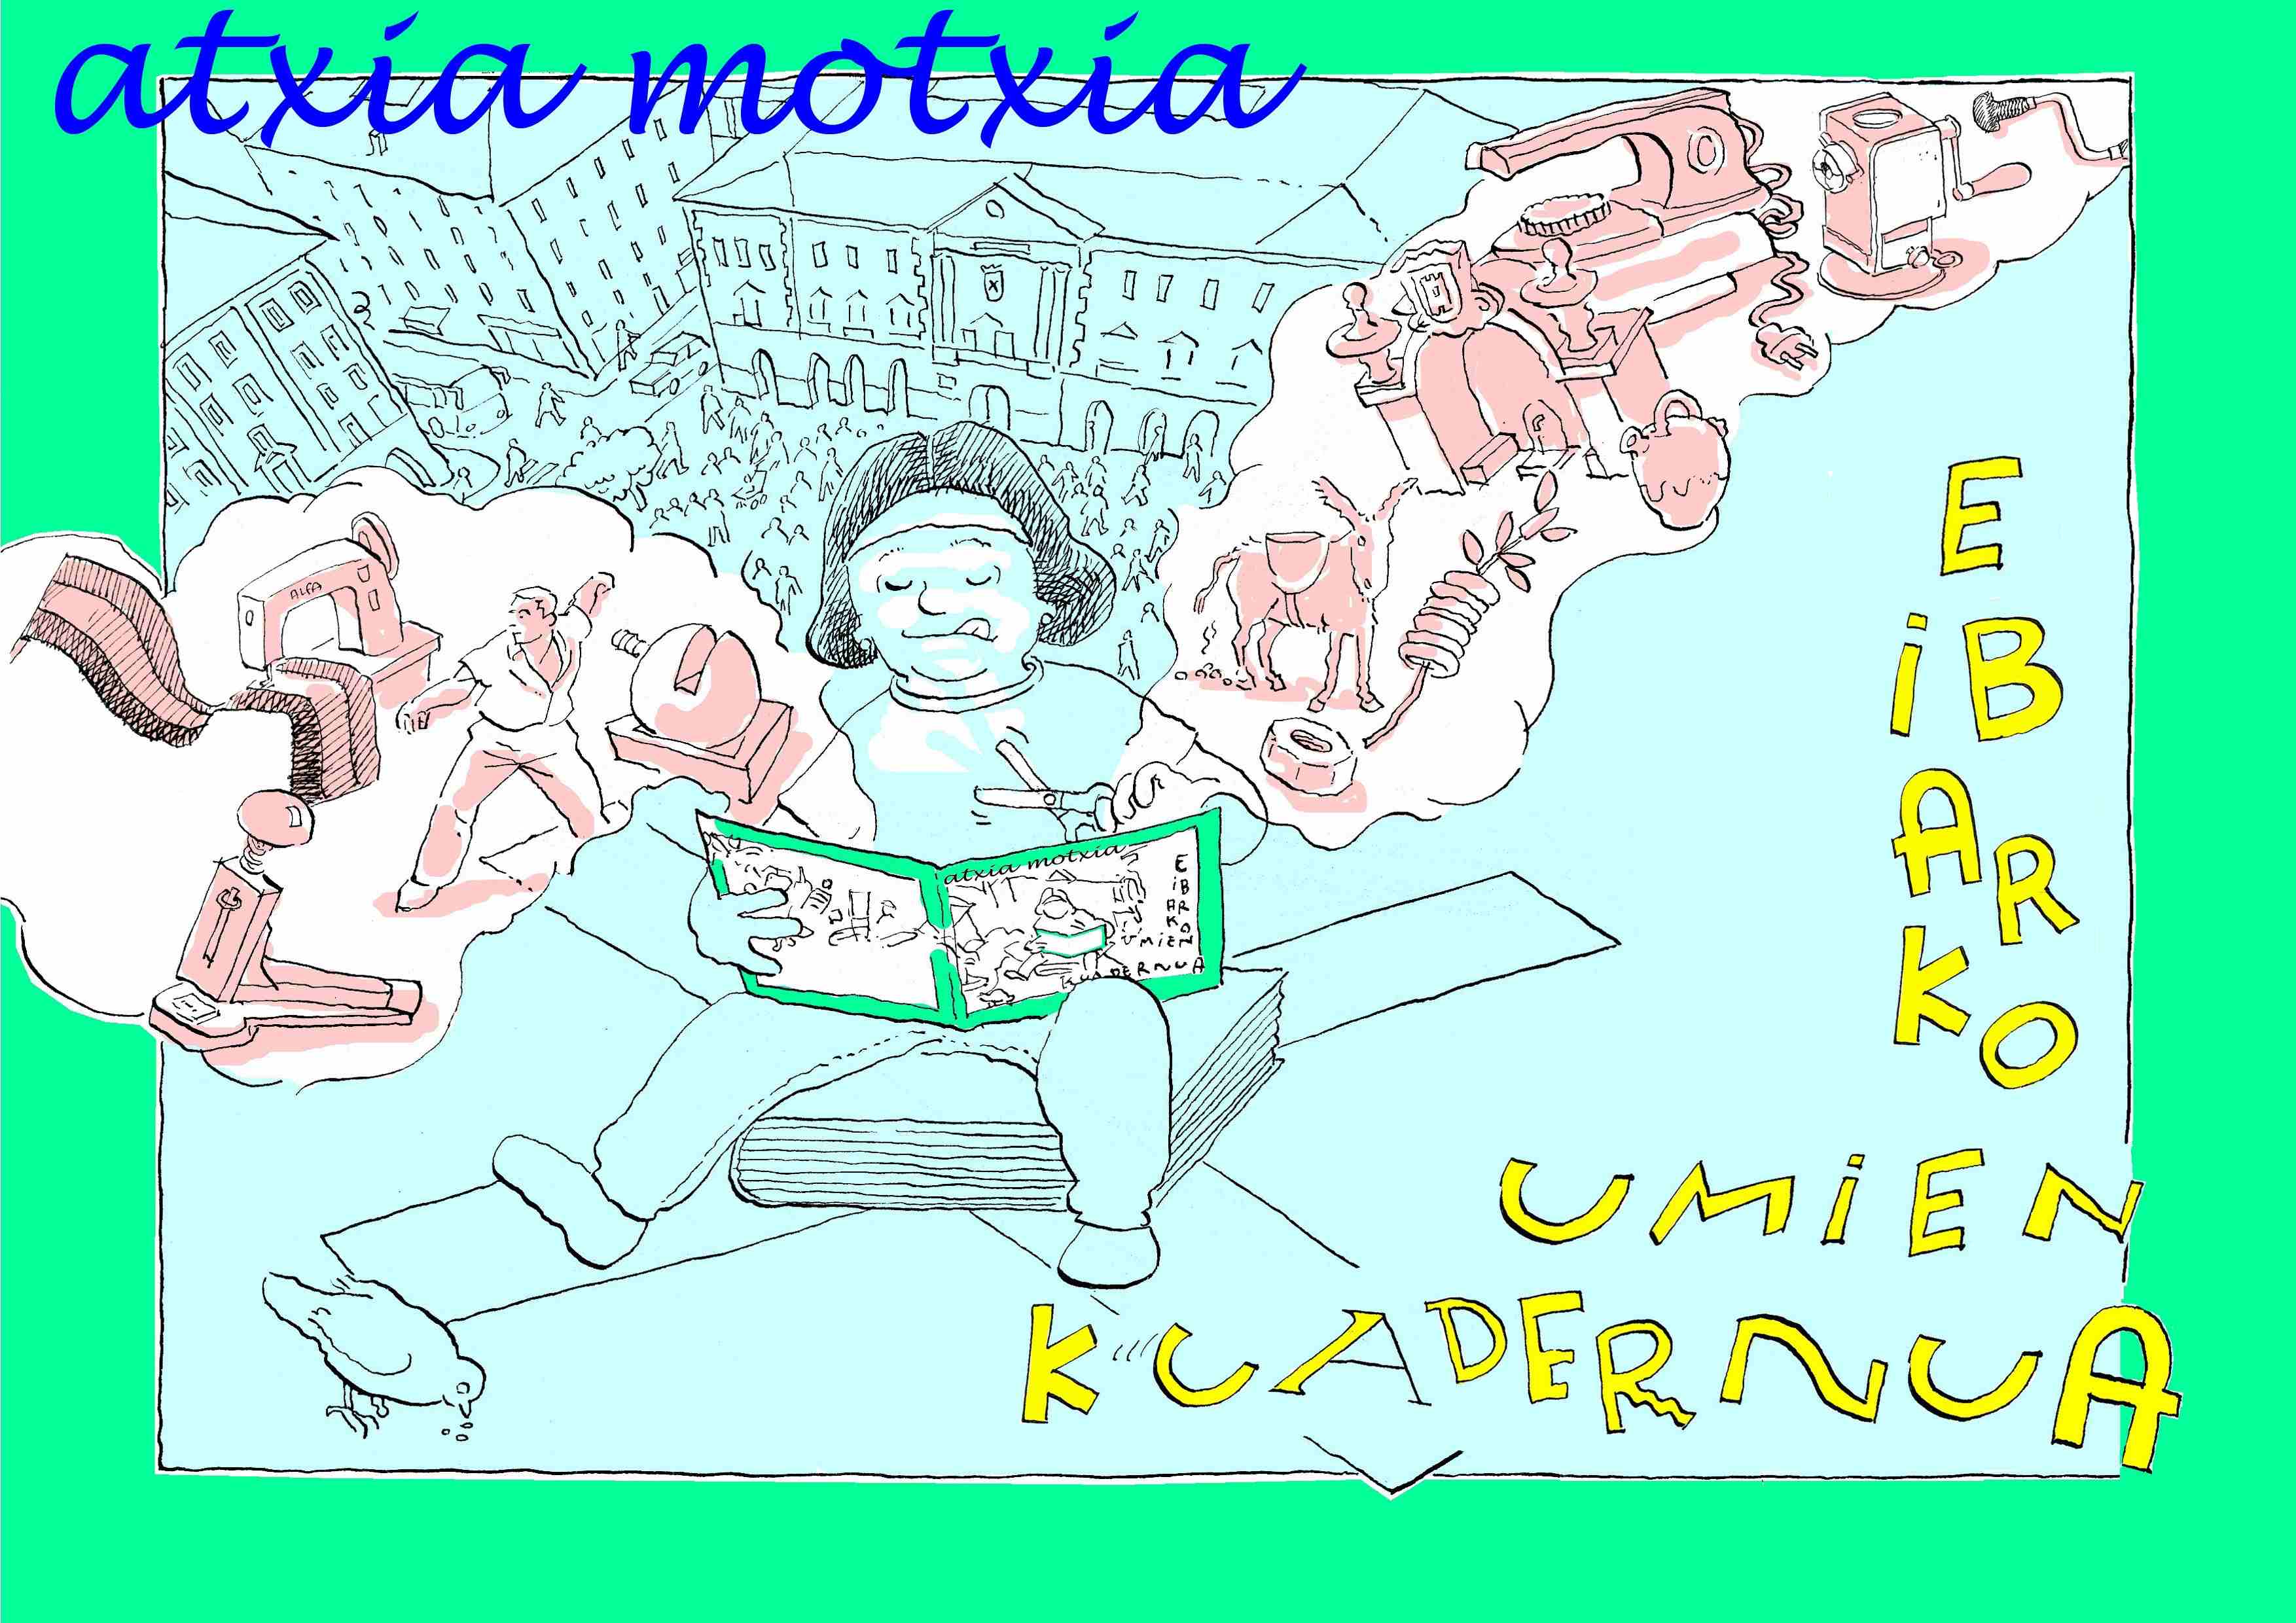 Ego Ibarra 2014: Atxia motxia. Eibarko umien kuadernuari azken ukituak ematen.